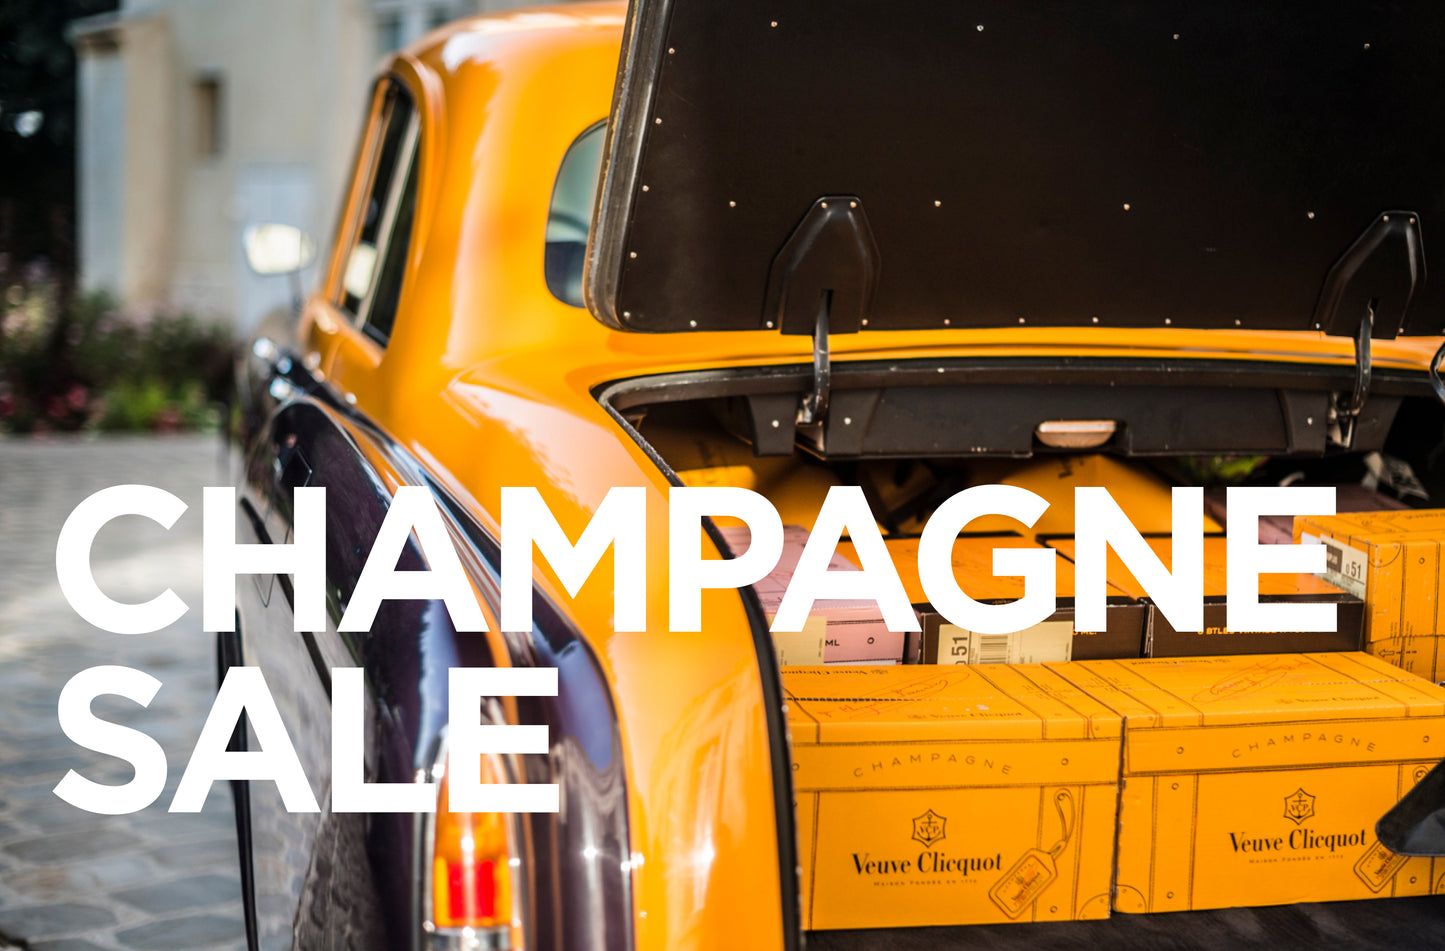 Emperor Champagne & Caviar Warehouse Sale